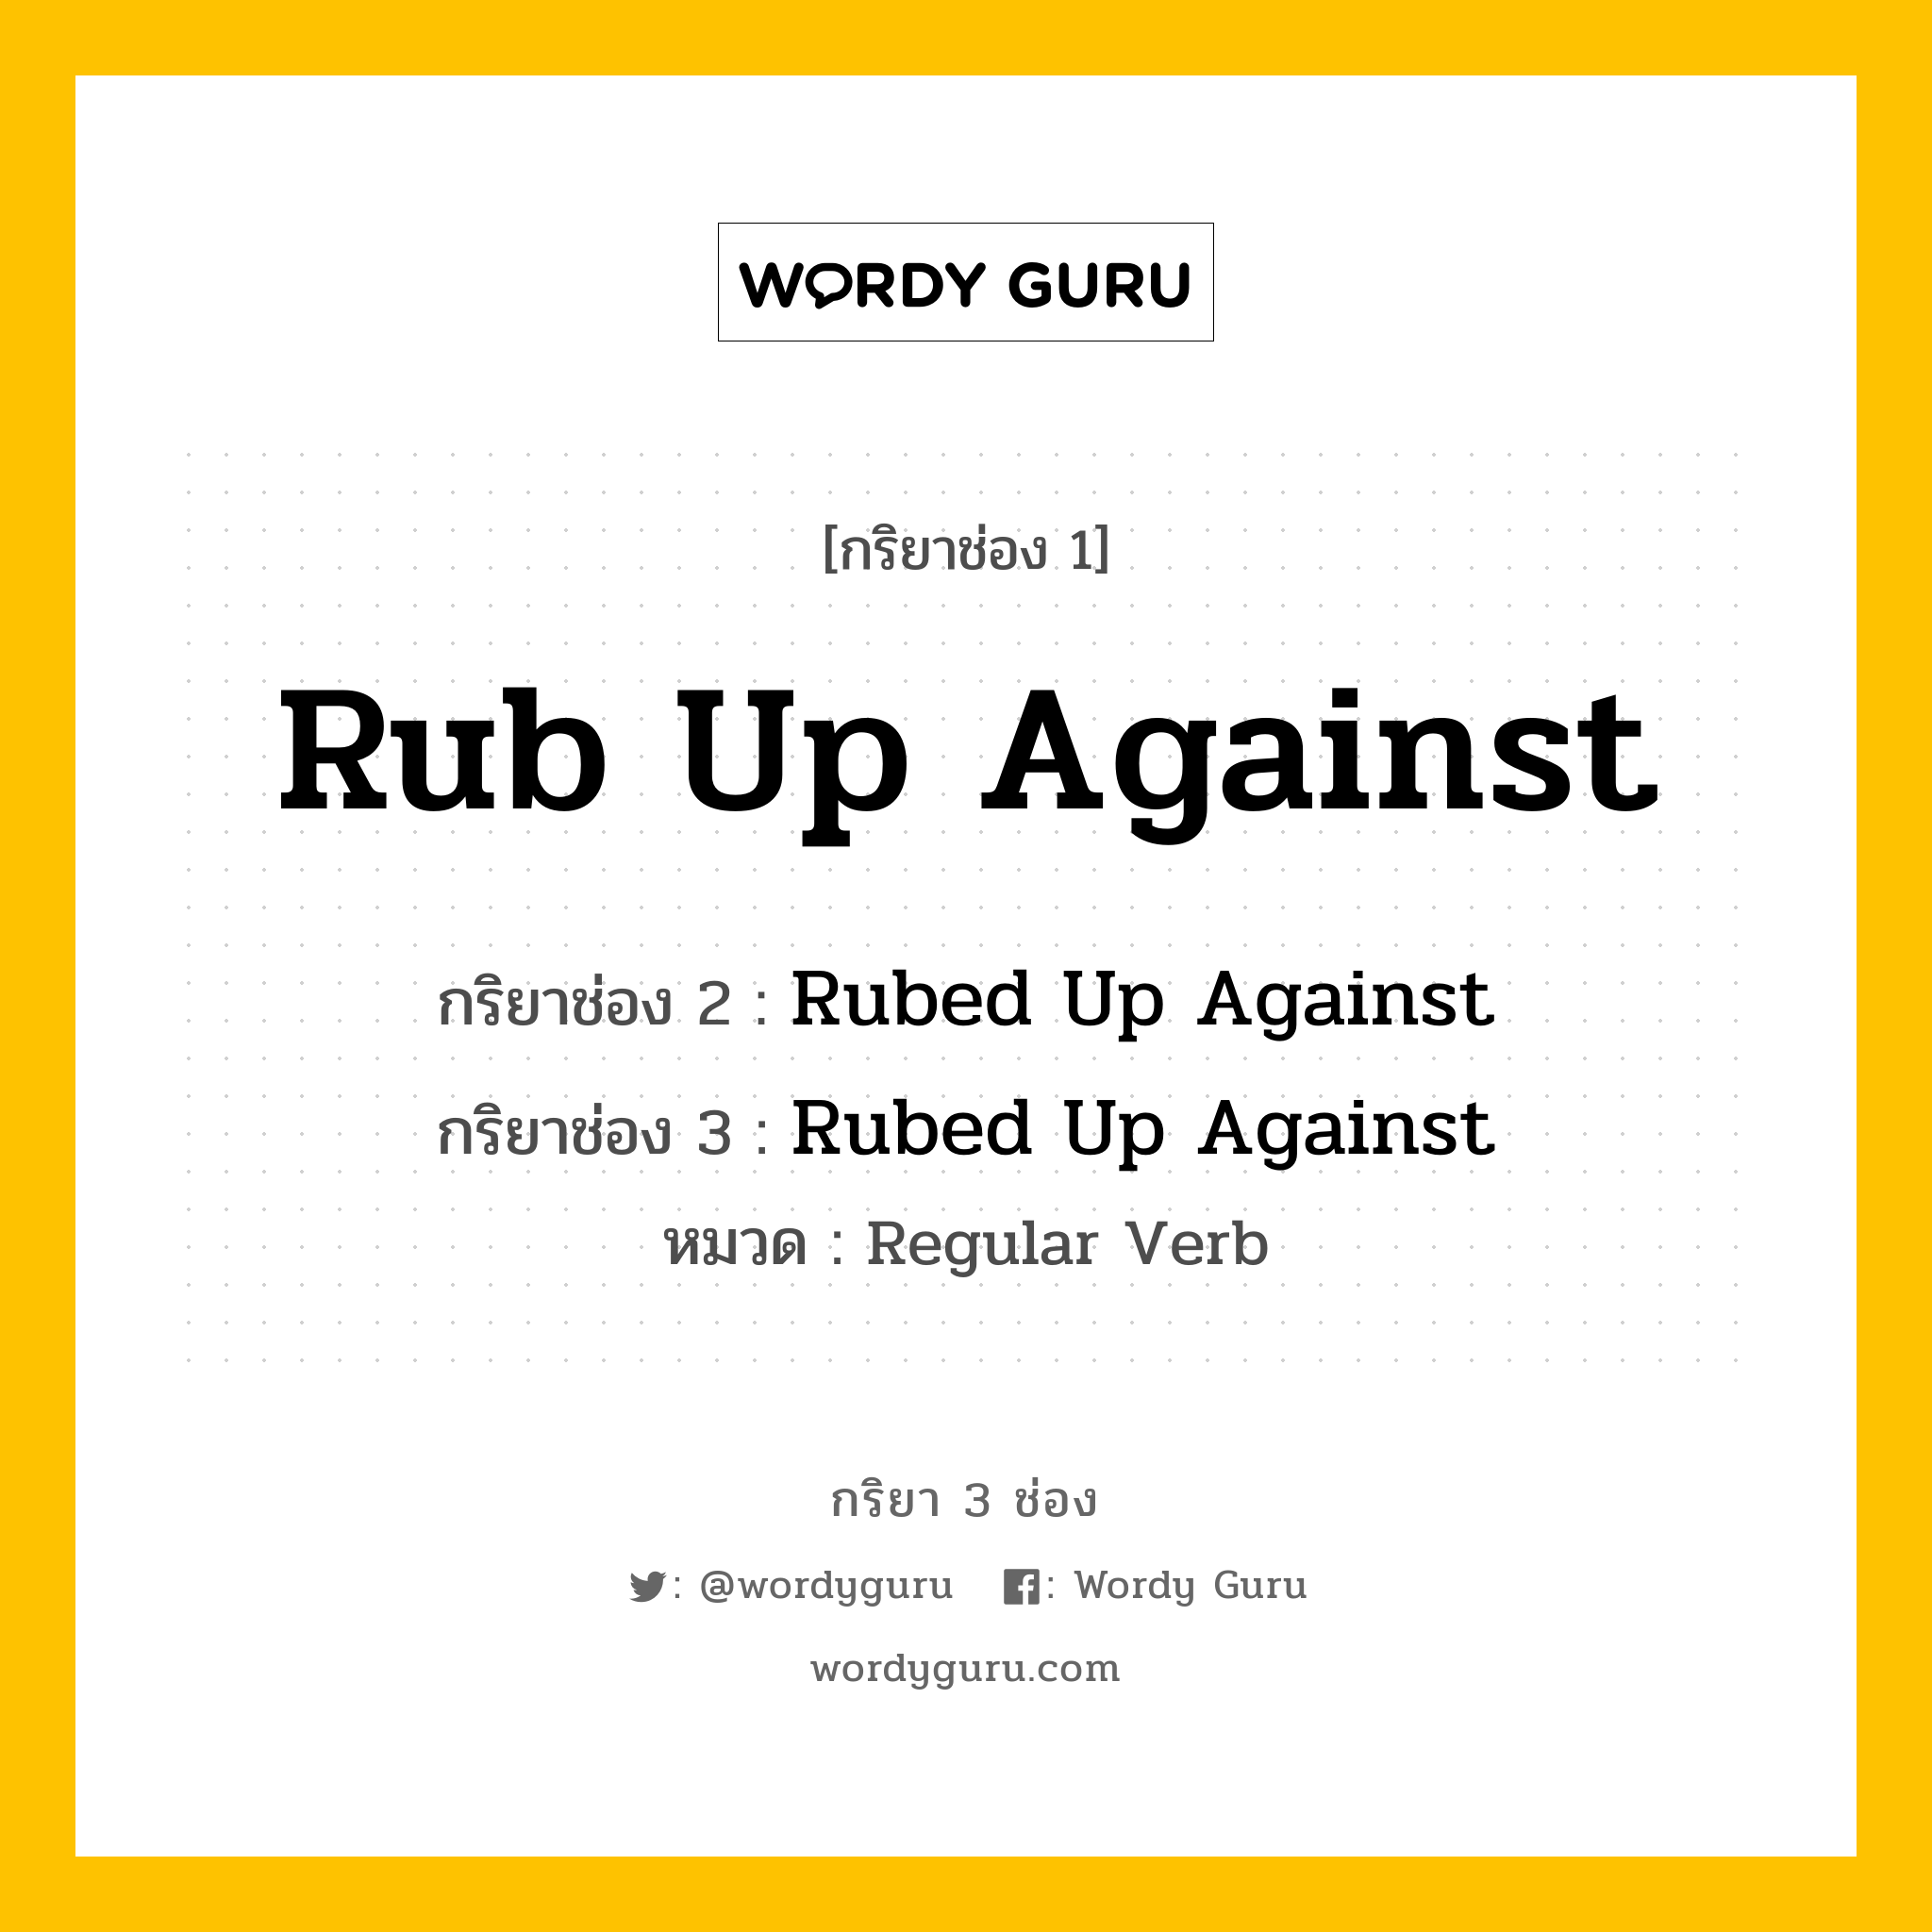 กริยา 3 ช่อง: Rub Up Against ช่อง 2 Rub Up Against ช่อง 3 คืออะไร, กริยาช่อง 1 Rub Up Against กริยาช่อง 2 Rubed Up Against กริยาช่อง 3 Rubed Up Against หมวด Regular Verb หมวด Regular Verb